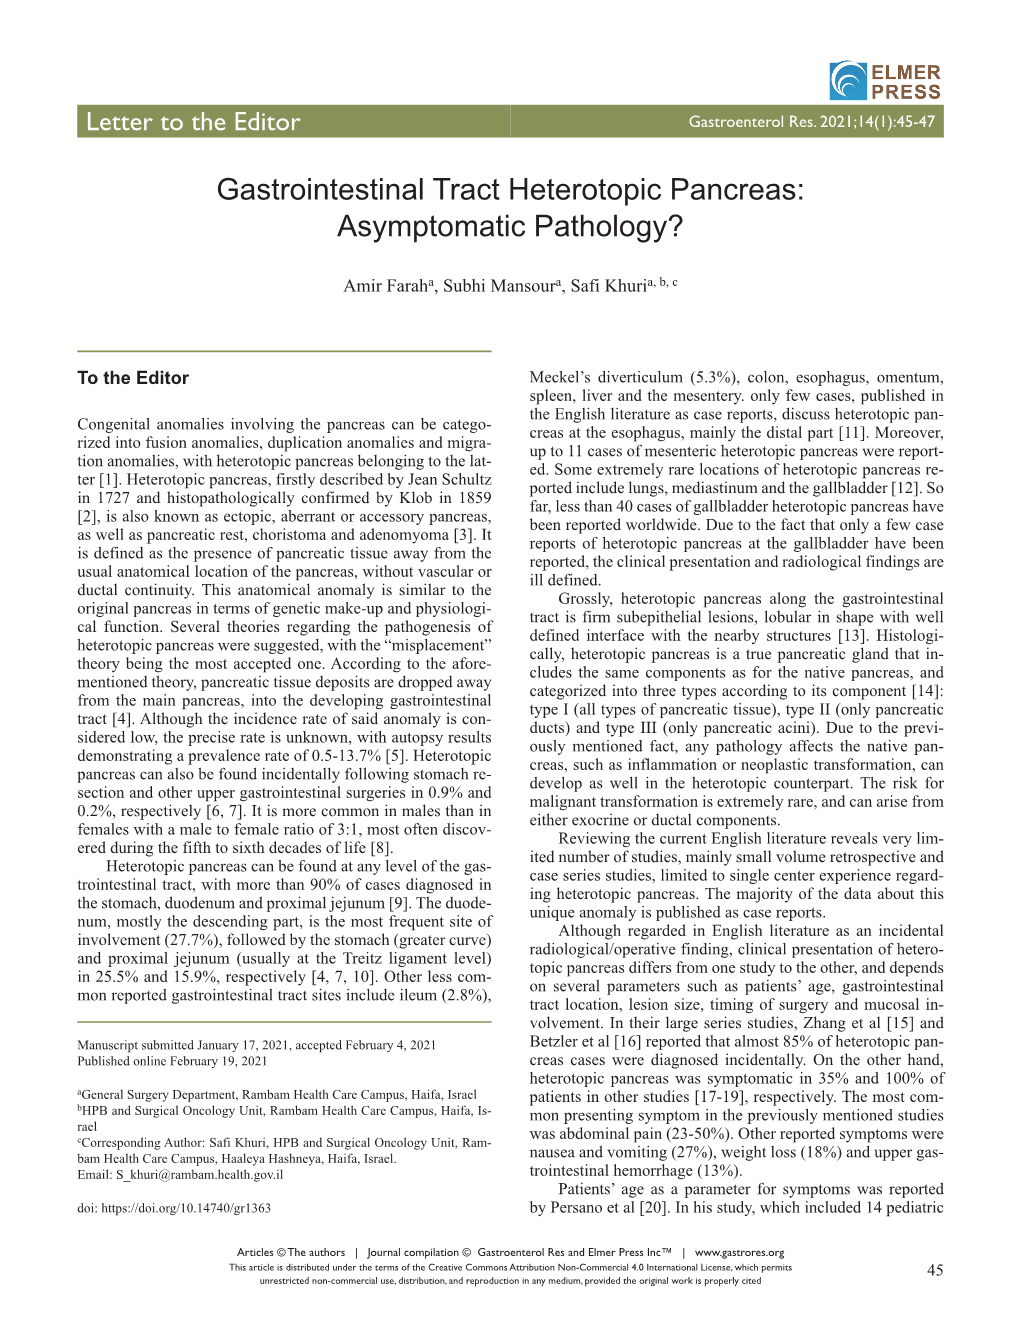 Gastrointestinal Tract Heterotopic Pancreas: Asymptomatic Pathology?